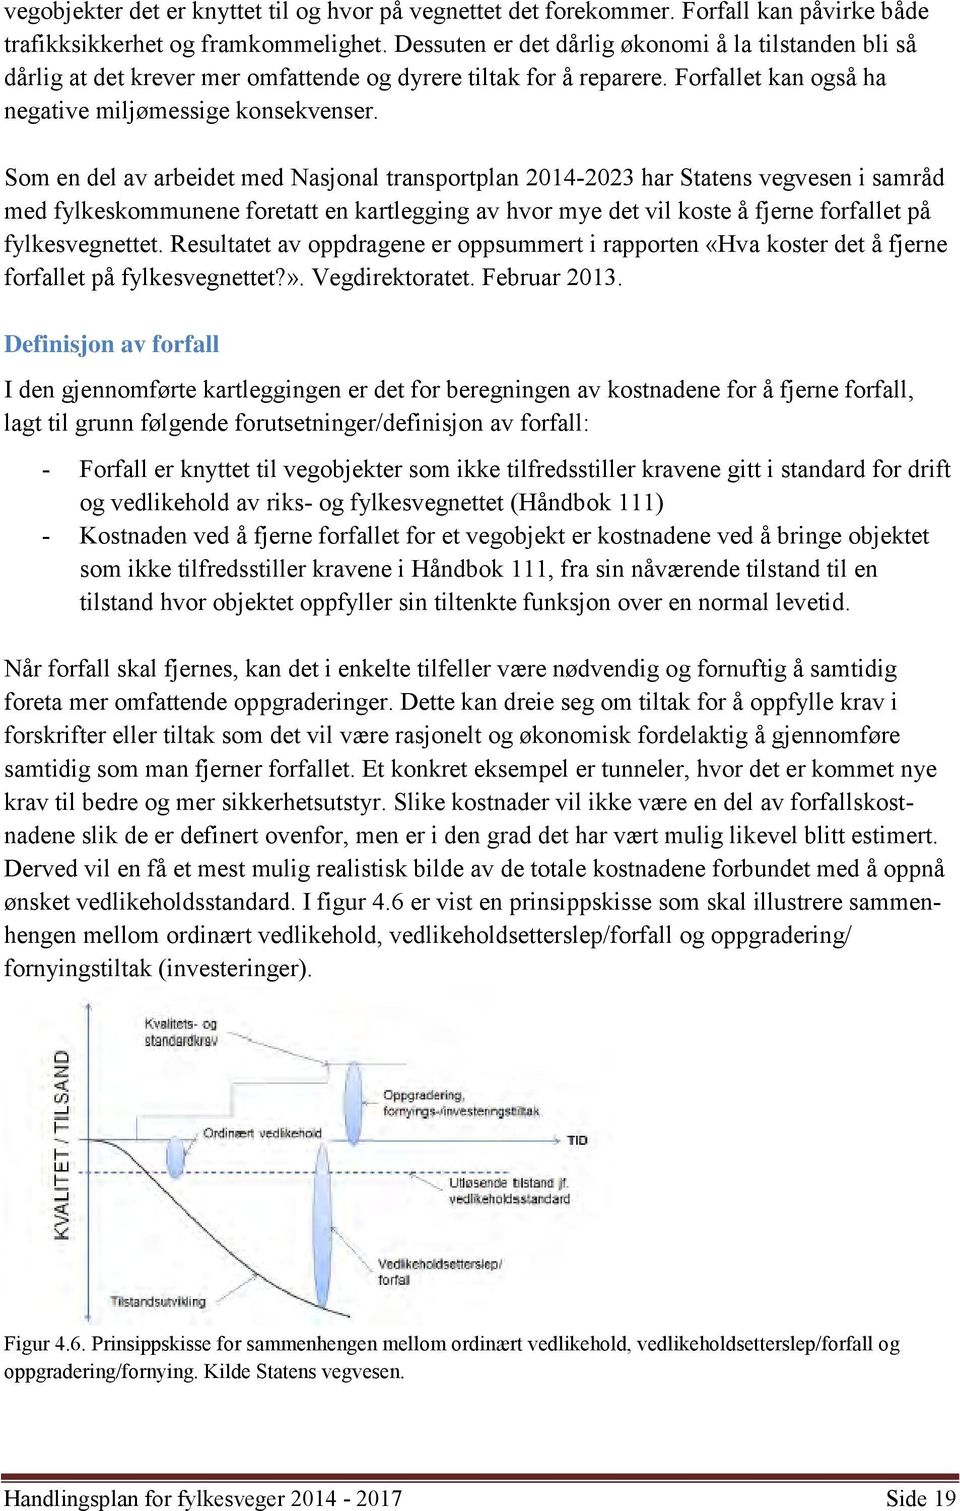 Som en del av arbeidet med Nasjonal transportplan 2014-2023 har Statens vegvesen i samråd med fylkeskommunene foretatt en kartlegging av hvor mye det vil koste å fjerne forfallet på fylkesvegnettet.